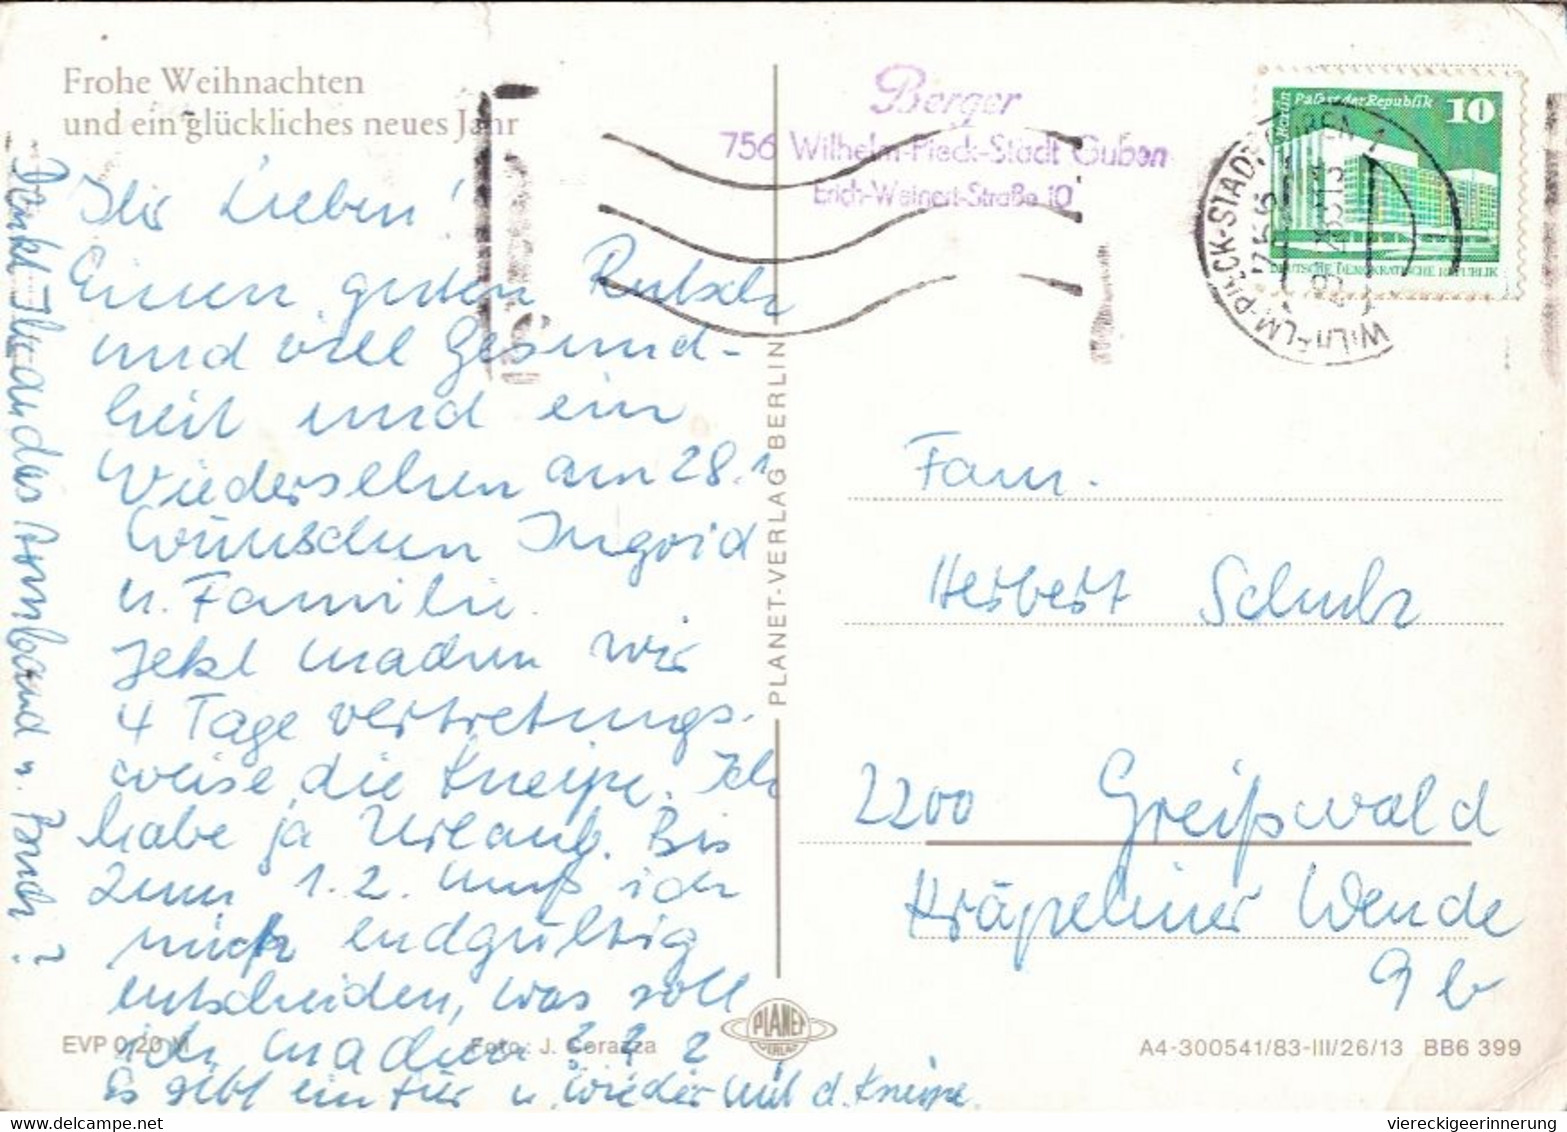 ! Lot von 19 DDR Ansichtskarten mit Maschinenstempel aus Bad Doberan, Sebnitz, Wittenberg, Wernigerode, Guben